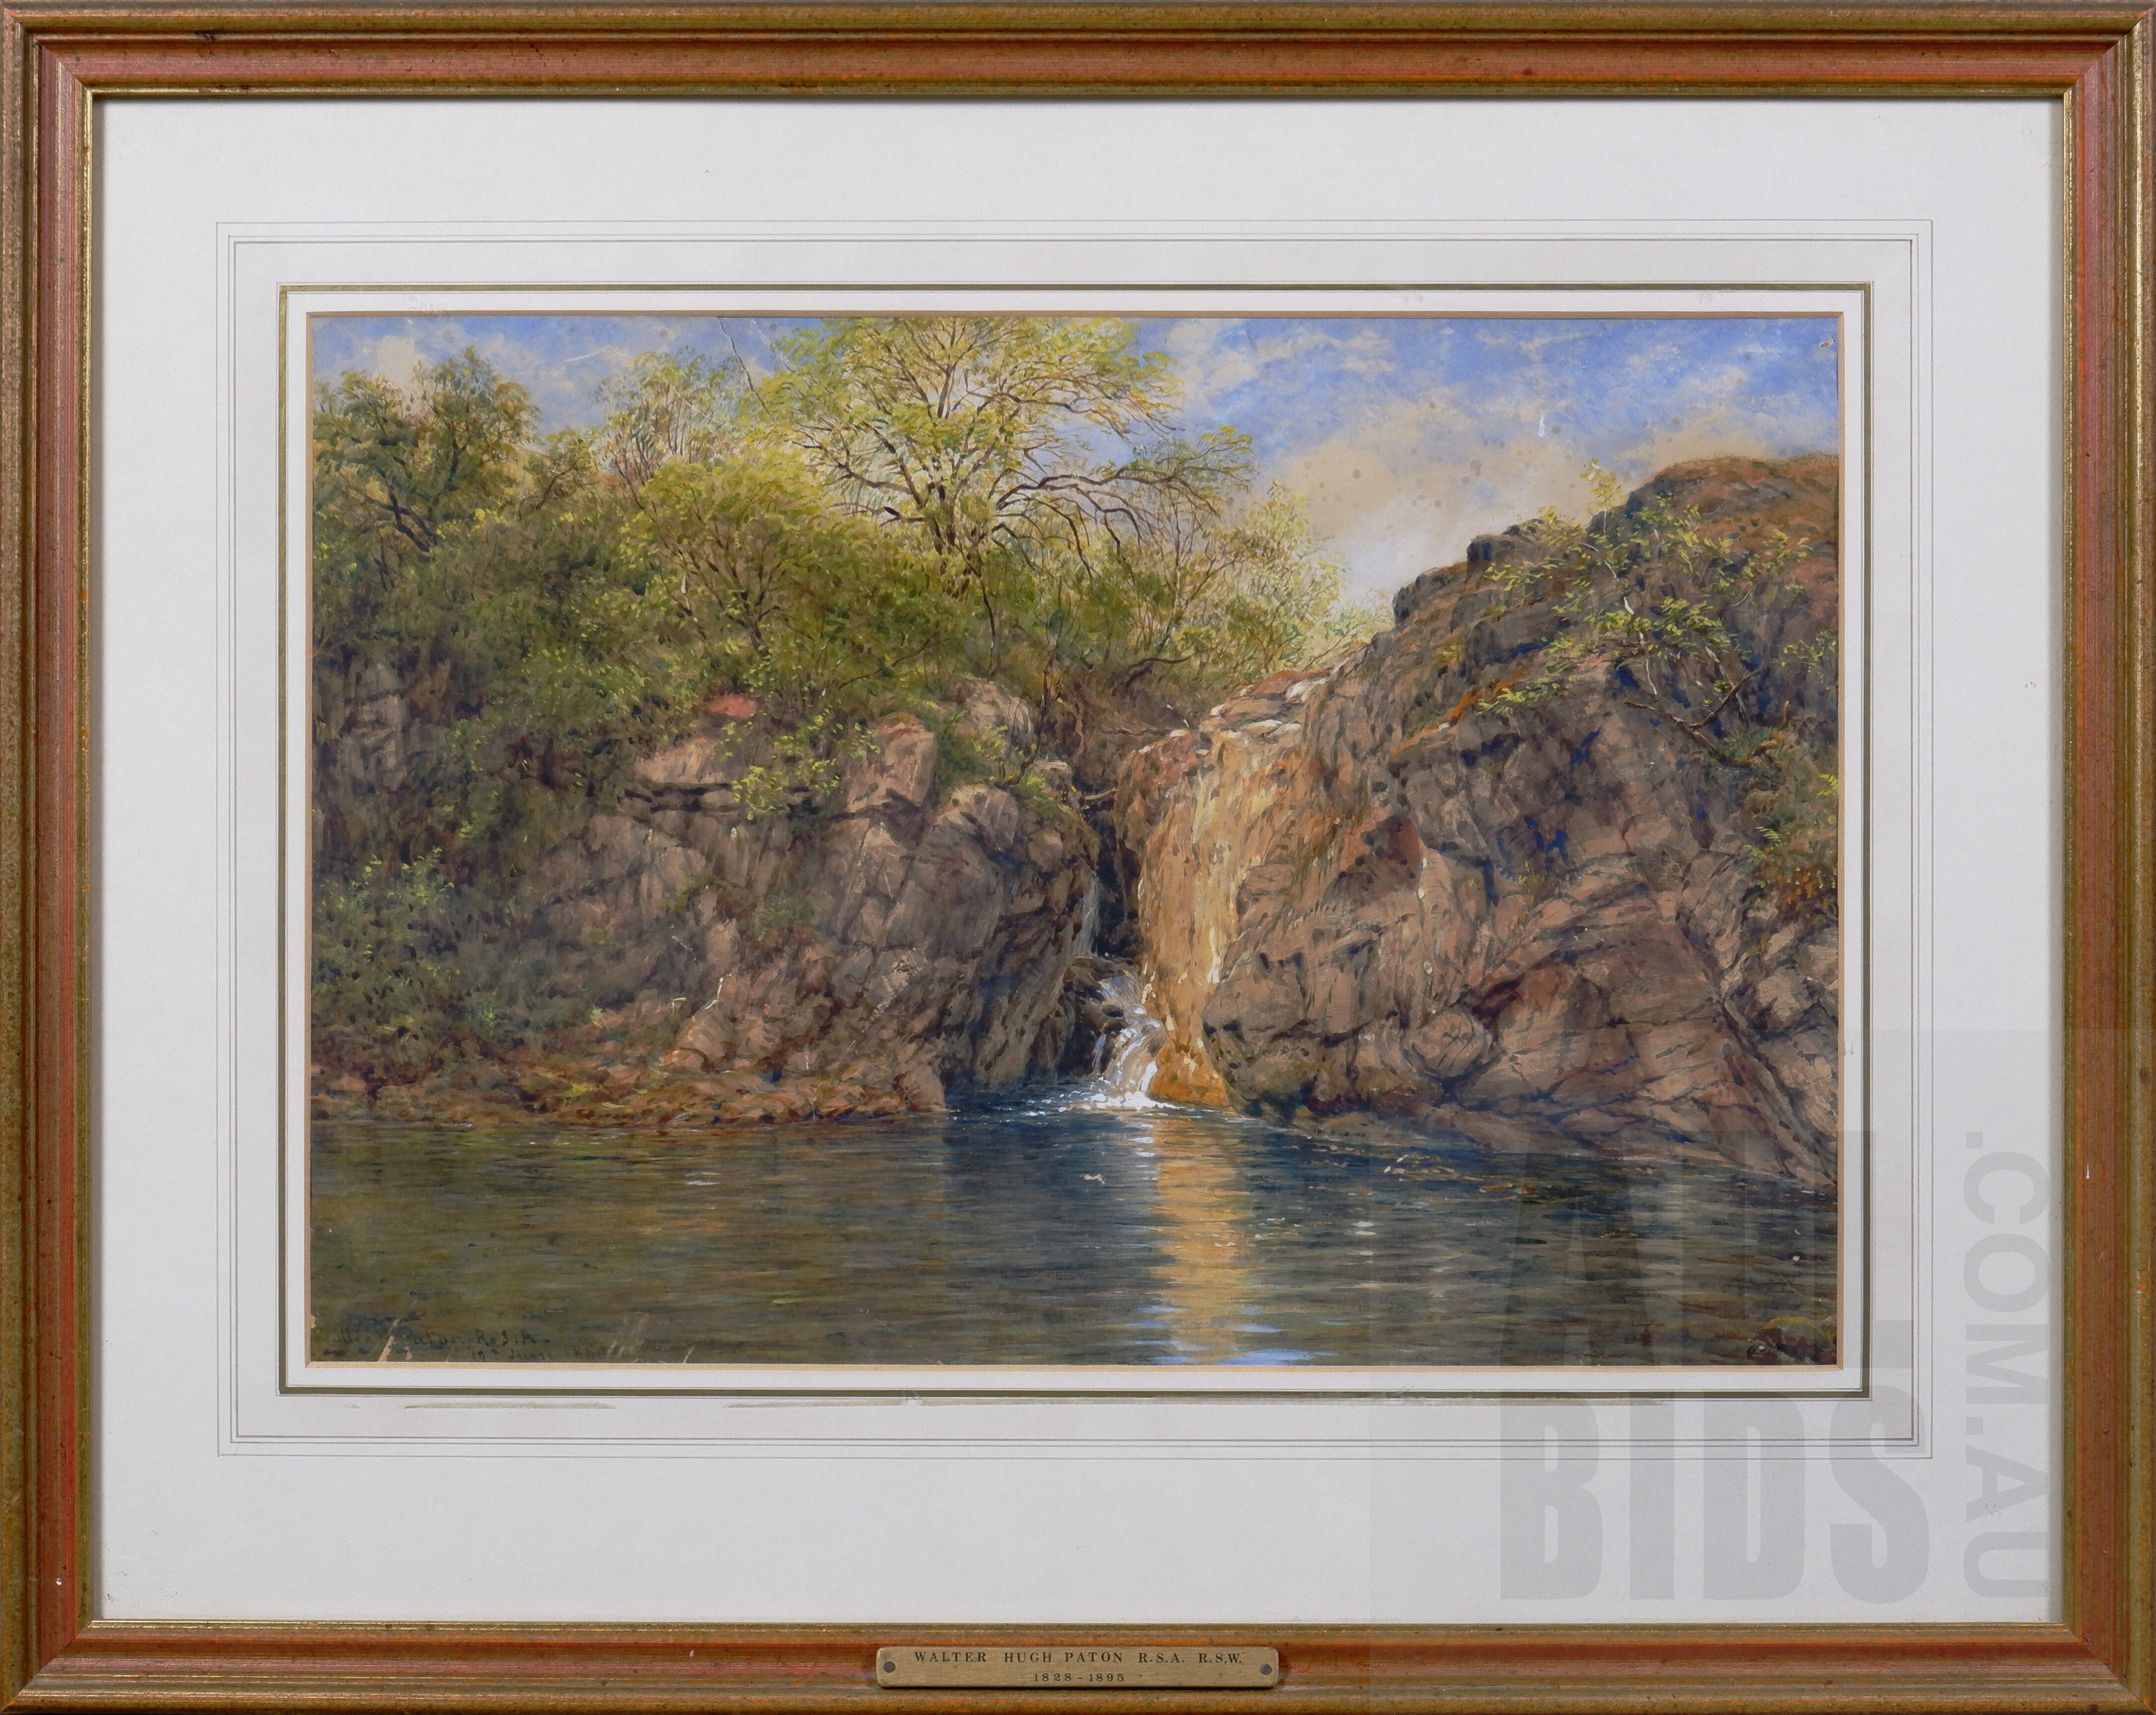 'Waller Hugh Paton R.S.A. R.S.W. (Scottish, 1828-1895), Waterfall View 1880, watercolour, 34.5 x 49.5cm'